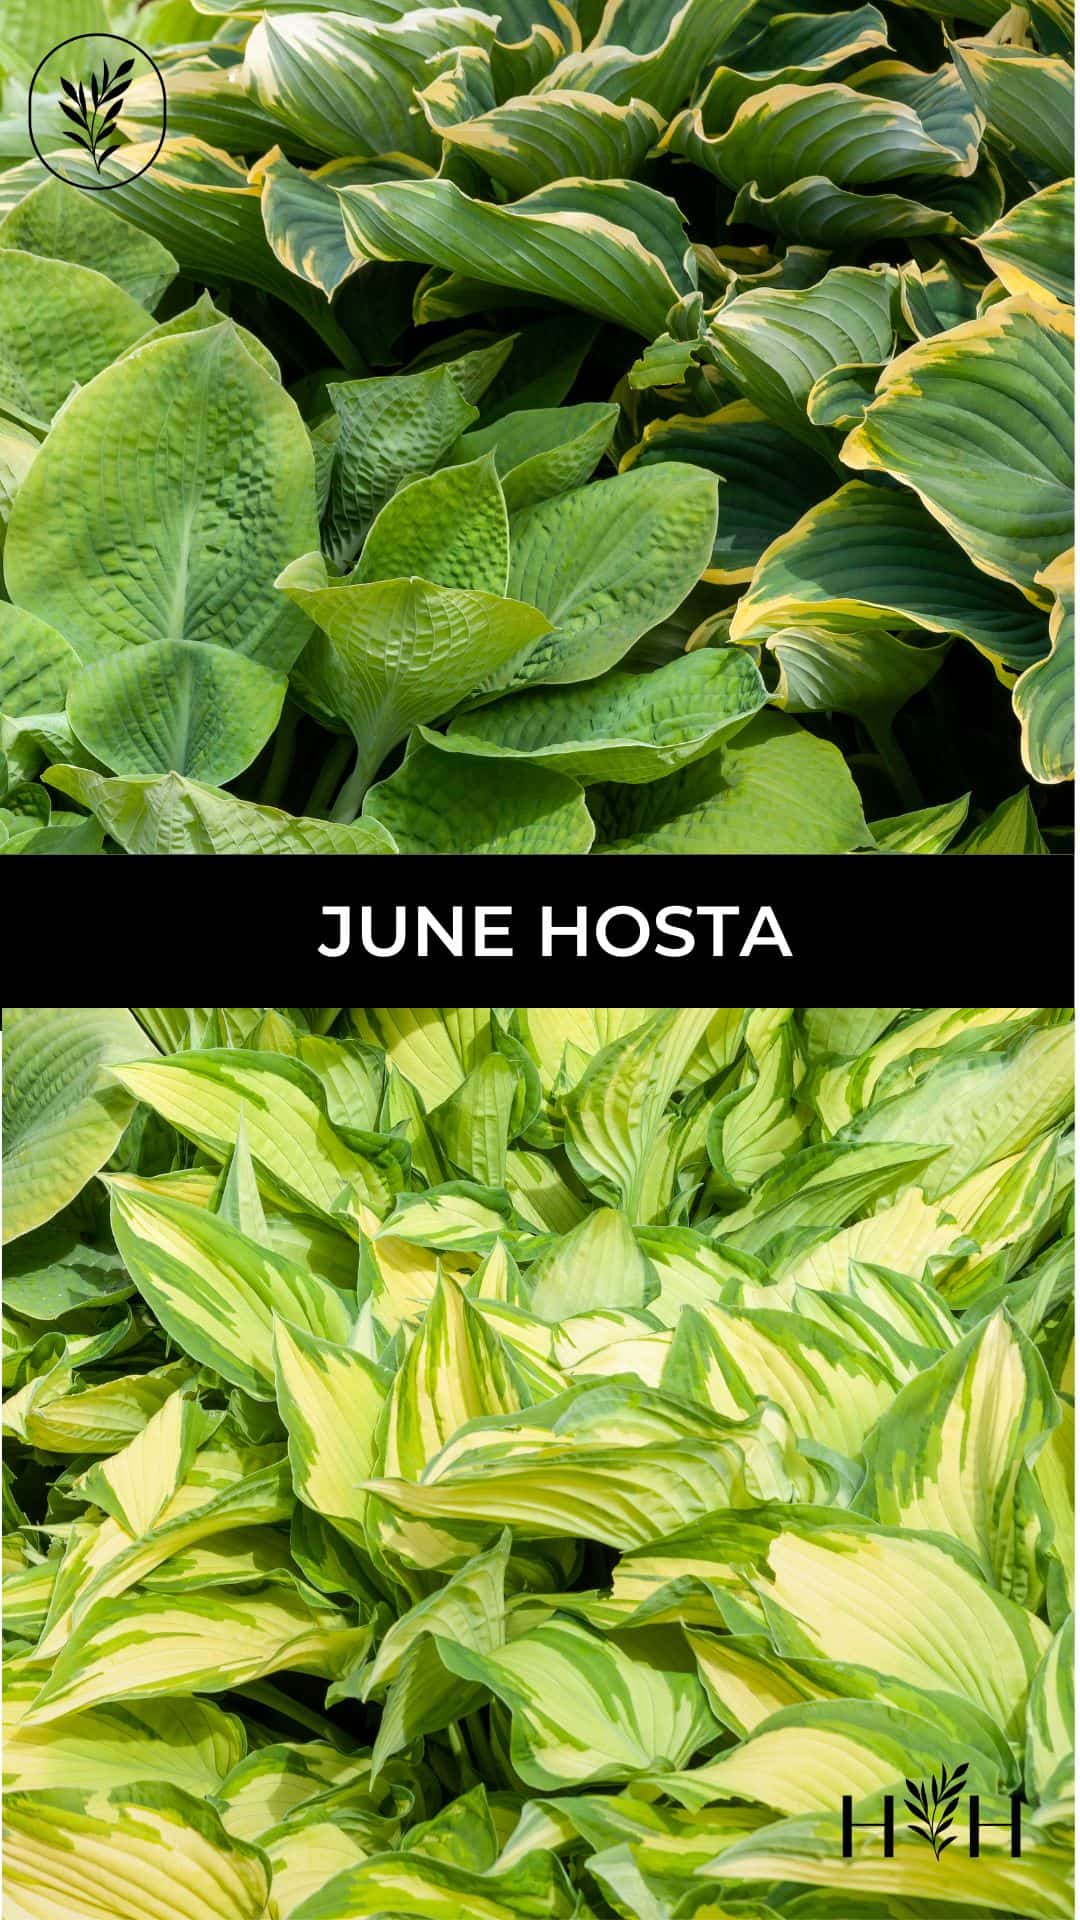 June hosta via @home4theharvest